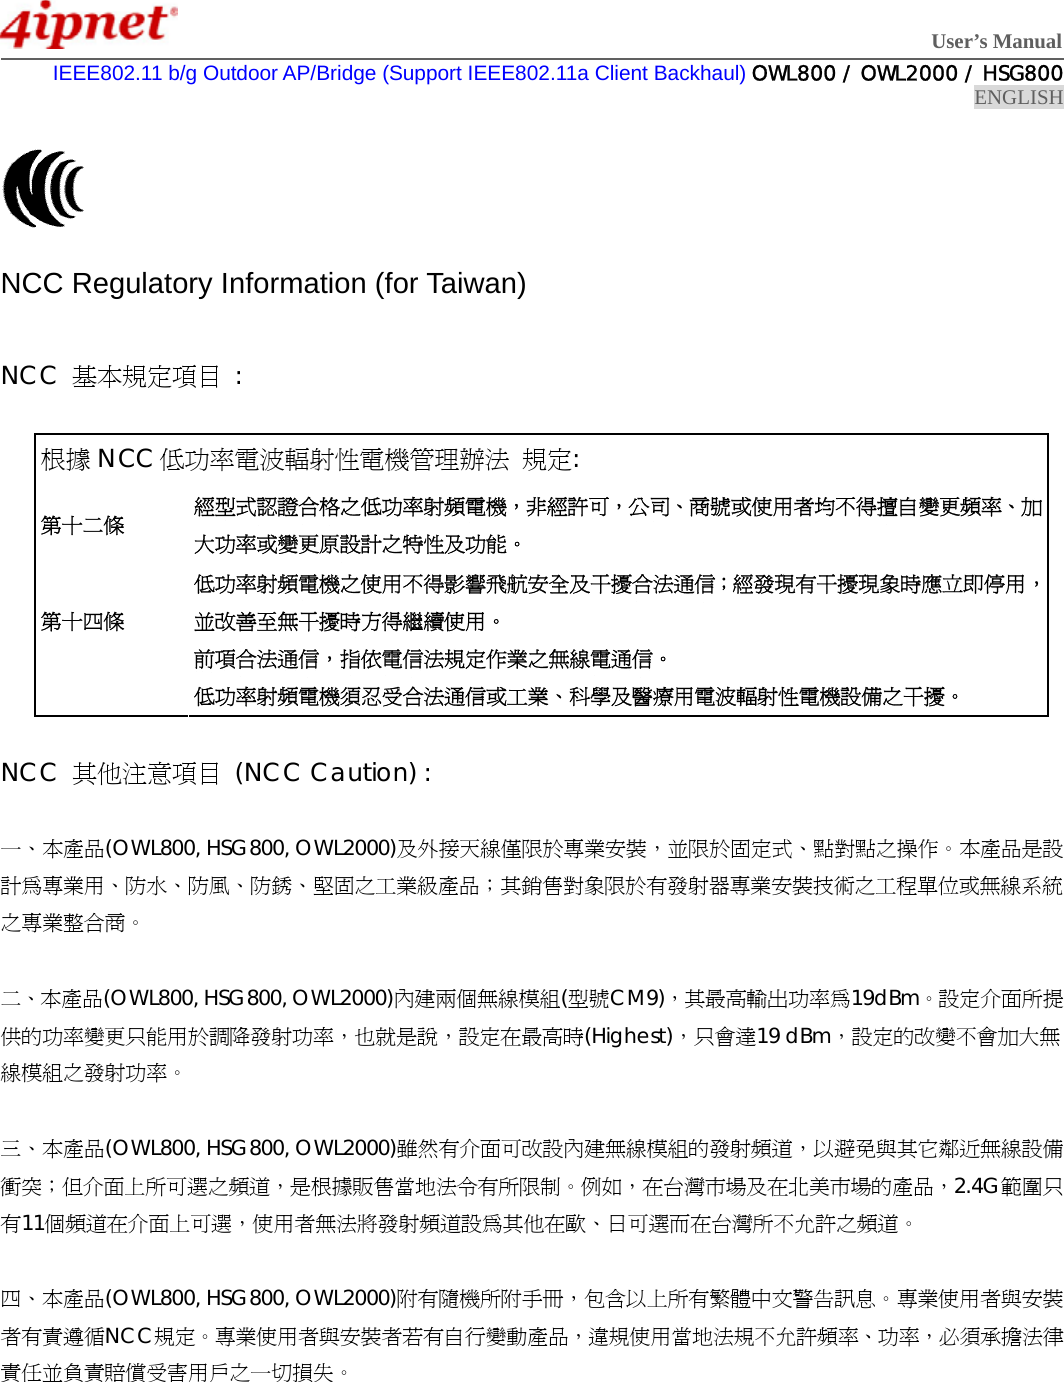  User’s Manual  IEEE802.11 b/g Outdoor AP/Bridge (Support IEEE802.11a Client Backhaul) OWL800 / OWL2000 / HSG800 ENGLISH    NCC Regulatory Information (for Taiwan)  NCC  基本規定項目 :  根據 NCC 低功率電波輻射性電機管理辦法 規定: 第十二條 經型式認證合格之低功率射頻電機，非經許可，公司、商號或使用者均不得擅自變更頻率、加大功率或變更原設計之特性及功能。 第十四條  低功率射頻電機之使用不得影響飛航安全及干擾合法通信；經發現有干擾現象時應立即停用，並改善至無干擾時方得繼續使用。 前項合法通信，指依電信法規定作業之無線電通信。 低功率射頻電機須忍受合法通信或工業、科學及醫療用電波輻射性電機設備之干擾。  NCC  其他注意項目 (NCC Caution) :  一、本產品(OWL800, HSG800, OWL2000)及外接天線僅限於專業安裝，並限於固定式、點對點之操作。本產品是設計為專業用、防水、防風、防銹、堅固之工業級產品；其銷售對象限於有發射器專業安裝技術之工程單位或無線系統之專業整合商。  二、本產品(OWL800, HSG800, OWL2000)內建兩個無線模組(型號CM9)，其最高輸出功率為19dBm。設定介面所提供的功率變更只能用於調降發射功率，也就是說，設定在最高時(Highest)，只會達19 dBm，設定的改變不會加大無線模組之發射功率。  三、本產品(OWL800, HSG800, OWL2000)雖然有介面可改設內建無線模組的發射頻道，以避免與其它鄰近無線設備衝突；但介面上所可選之頻道，是根據販售當地法令有所限制。例如，在台灣市場及在北美市場的產品，2.4G範圍只有11個頻道在介面上可選，使用者無法將發射頻道設為其他在歐、日可選而在台灣所不允許之頻道。  四、本產品(OWL800, HSG800, OWL2000)附有隨機所附手冊，包含以上所有繁體中文警告訊息。專業使用者與安裝者有責遵循NCC規定。專業使用者與安裝者若有自行變動產品，違規使用當地法規不允許頻率、功率，必須承擔法律責任並負責賠償受害用戶之一切損失。   